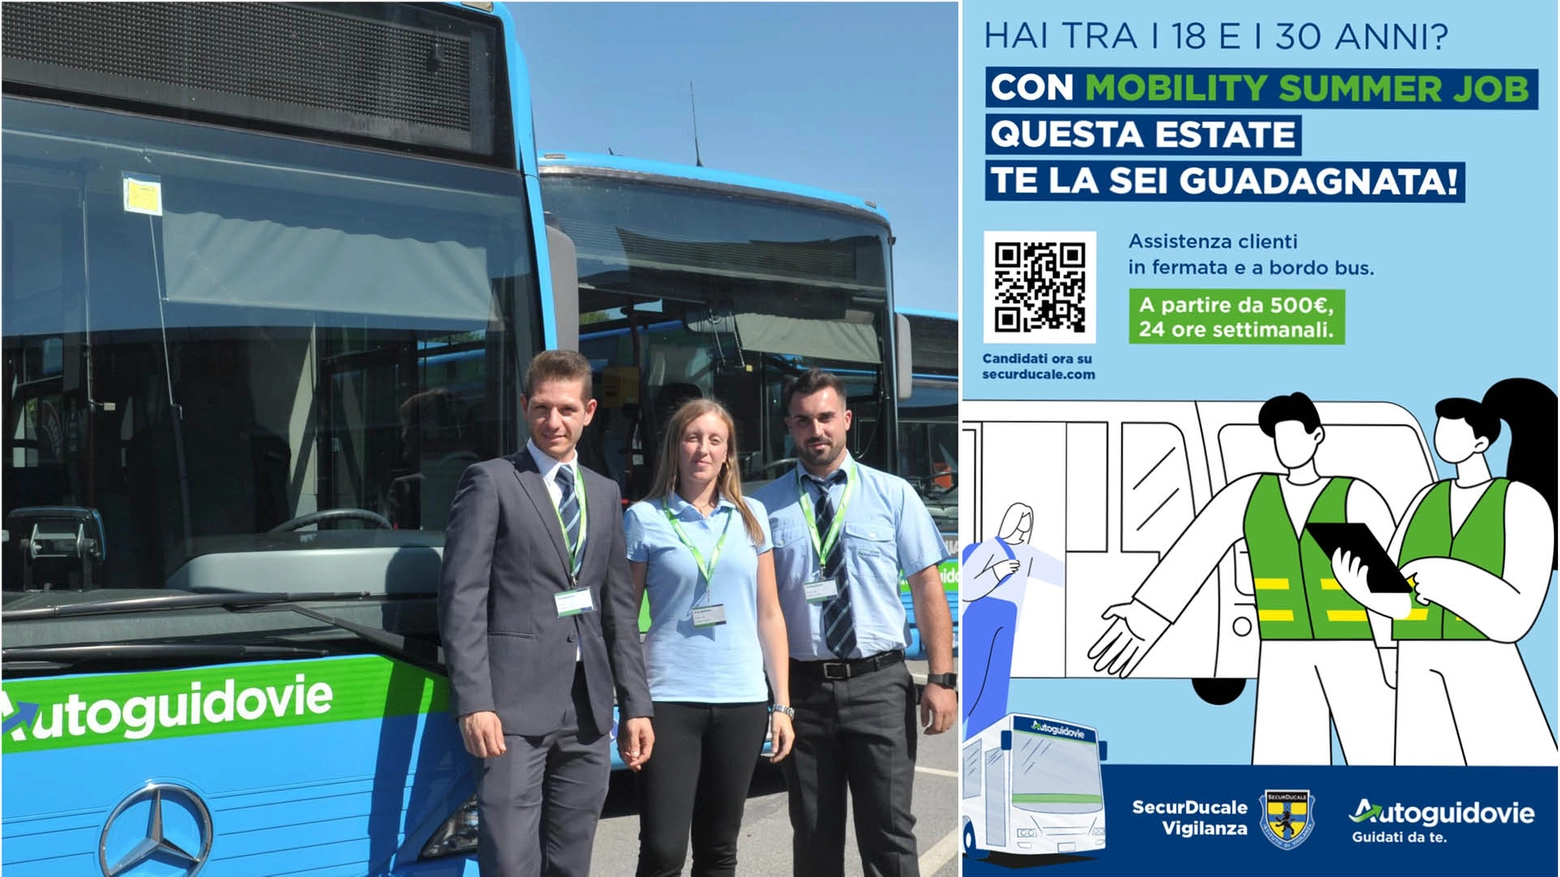 L’azienda che gestisce il trasporto pubblico locale in molte aree della Lombardia ha lanciato un nuovo progetto per favorire l'autonomia economica dei giovani e il loro l’inserimento nel mondo del lavoro